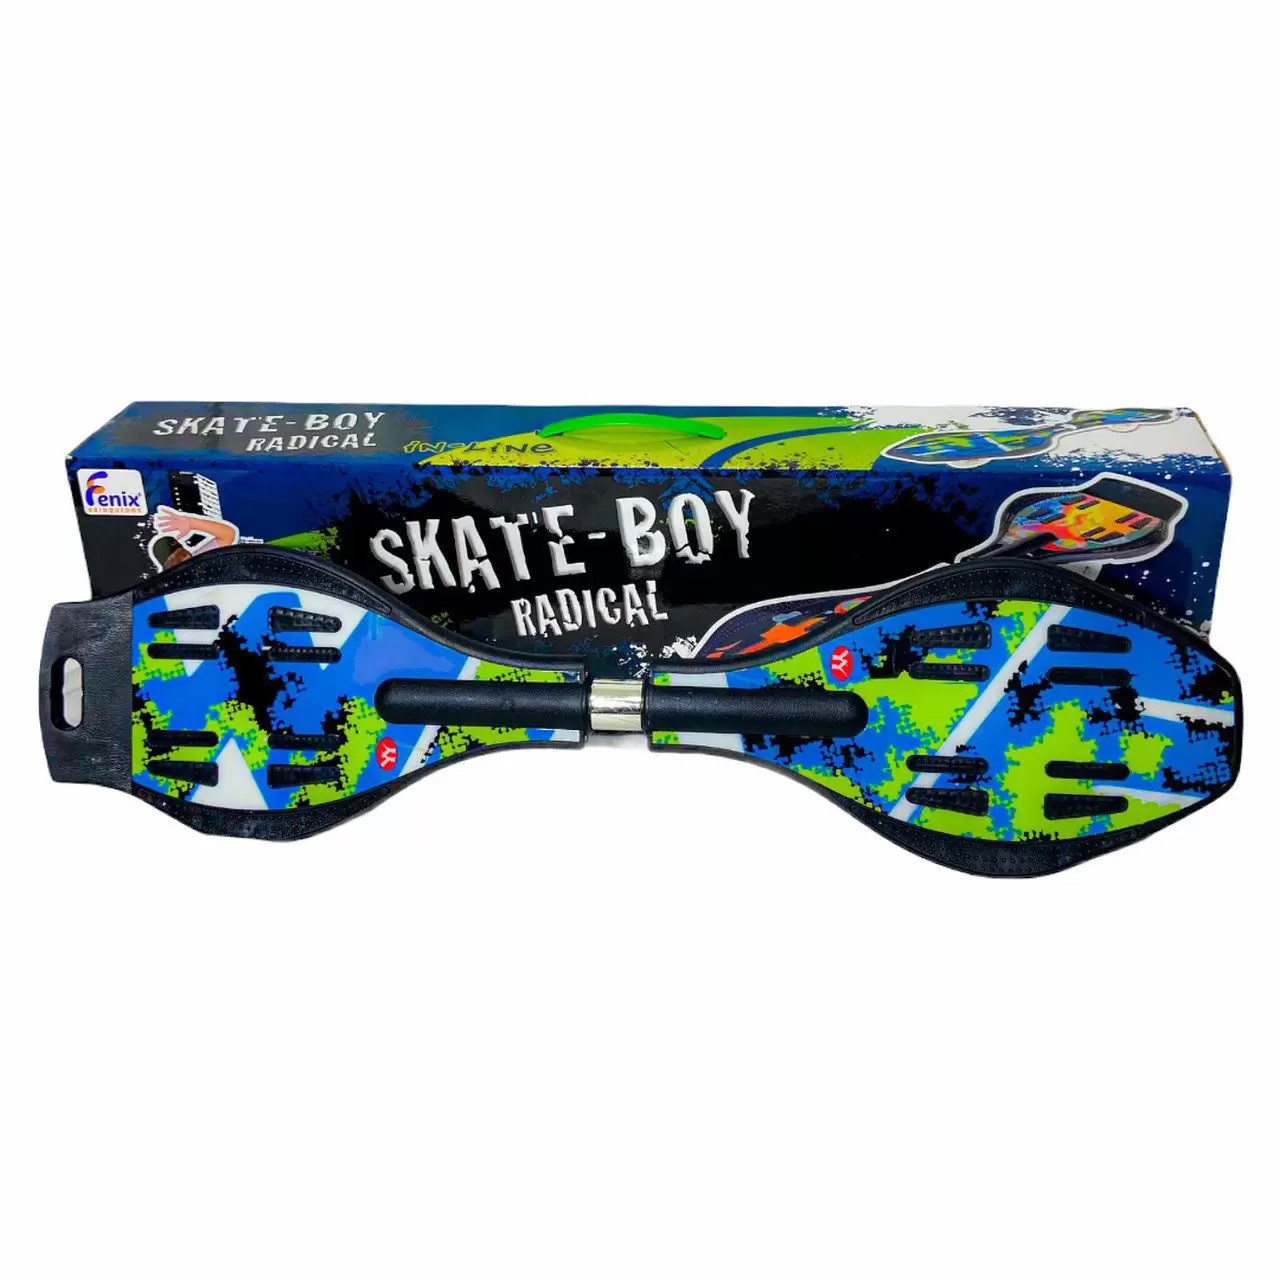 Skate Boy Radical - Waveboard - 2 Rodas - SB-170 - Fenix - Real Brinquedos